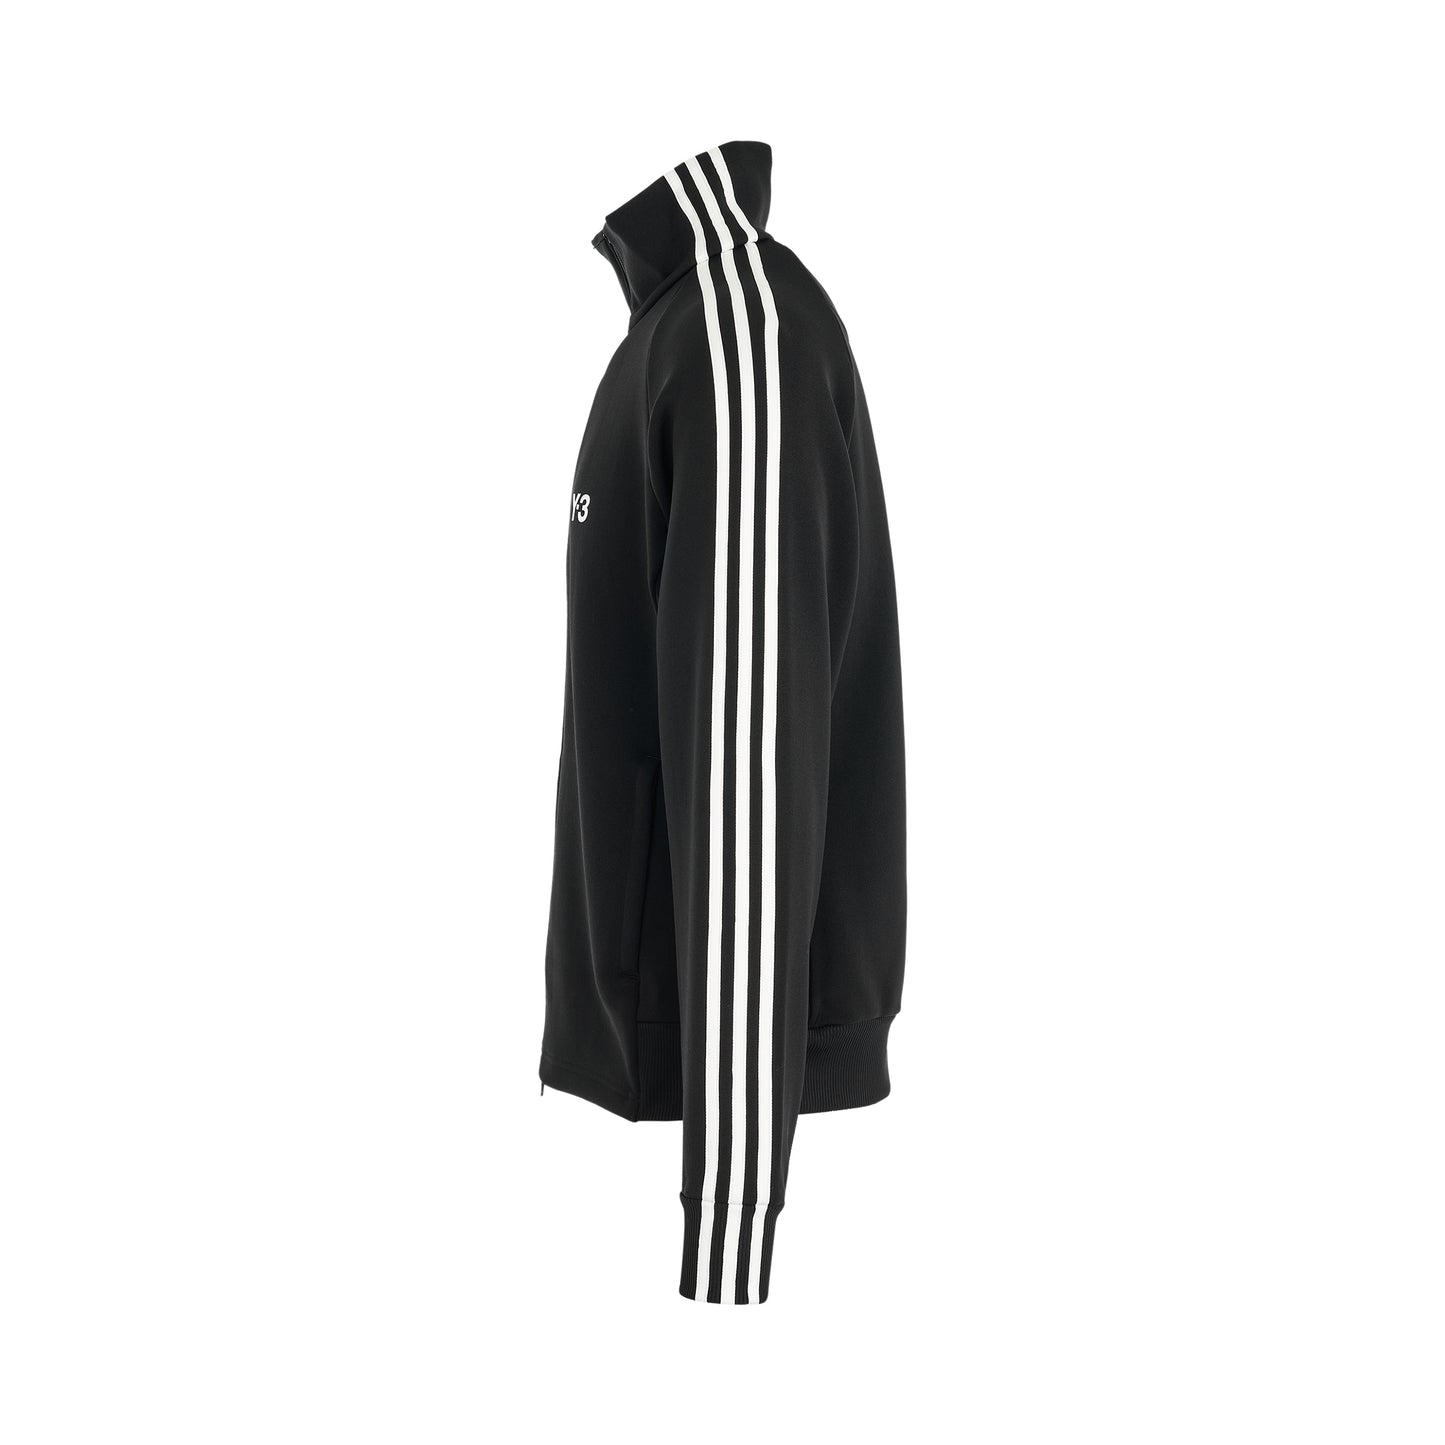 3 Stripe Track Jacket in Black/Off White